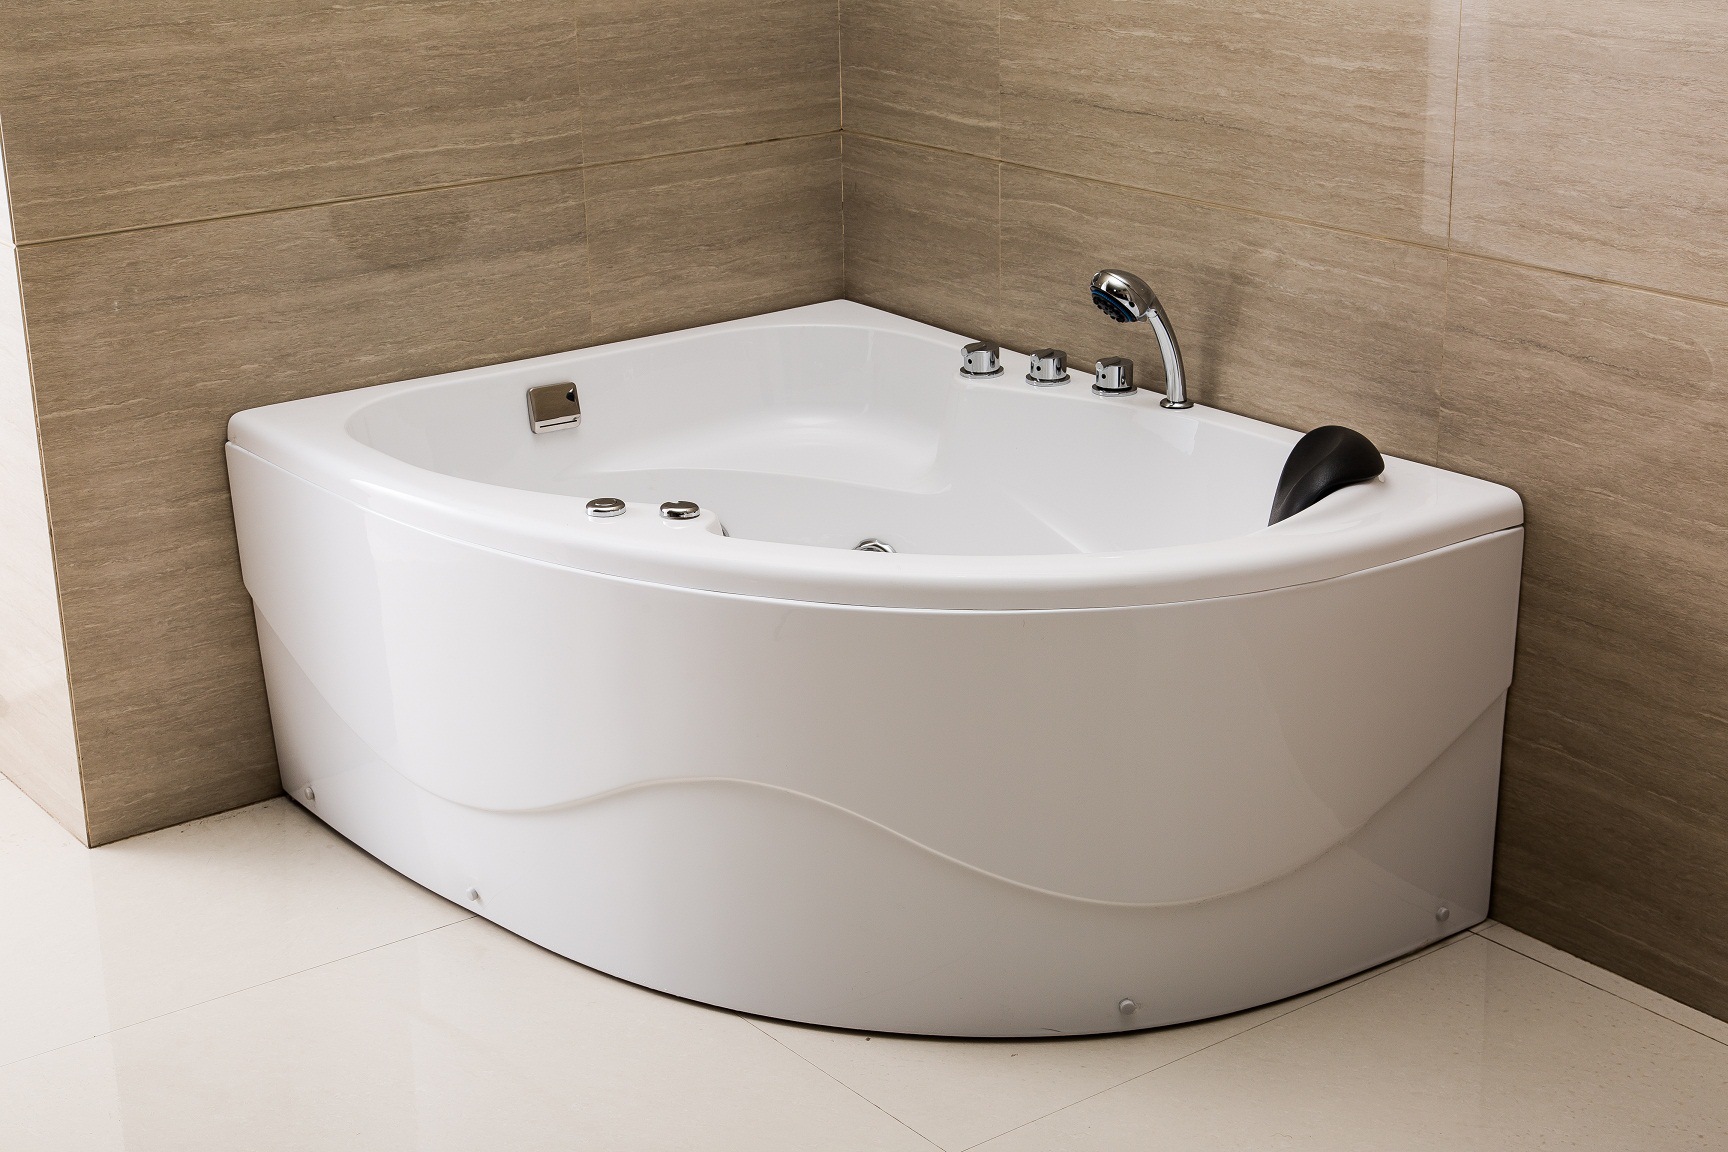 小卫生间这样设计才不会浪费空间 - 果敢浴缸设计效果图 - 每平每屋·设计家